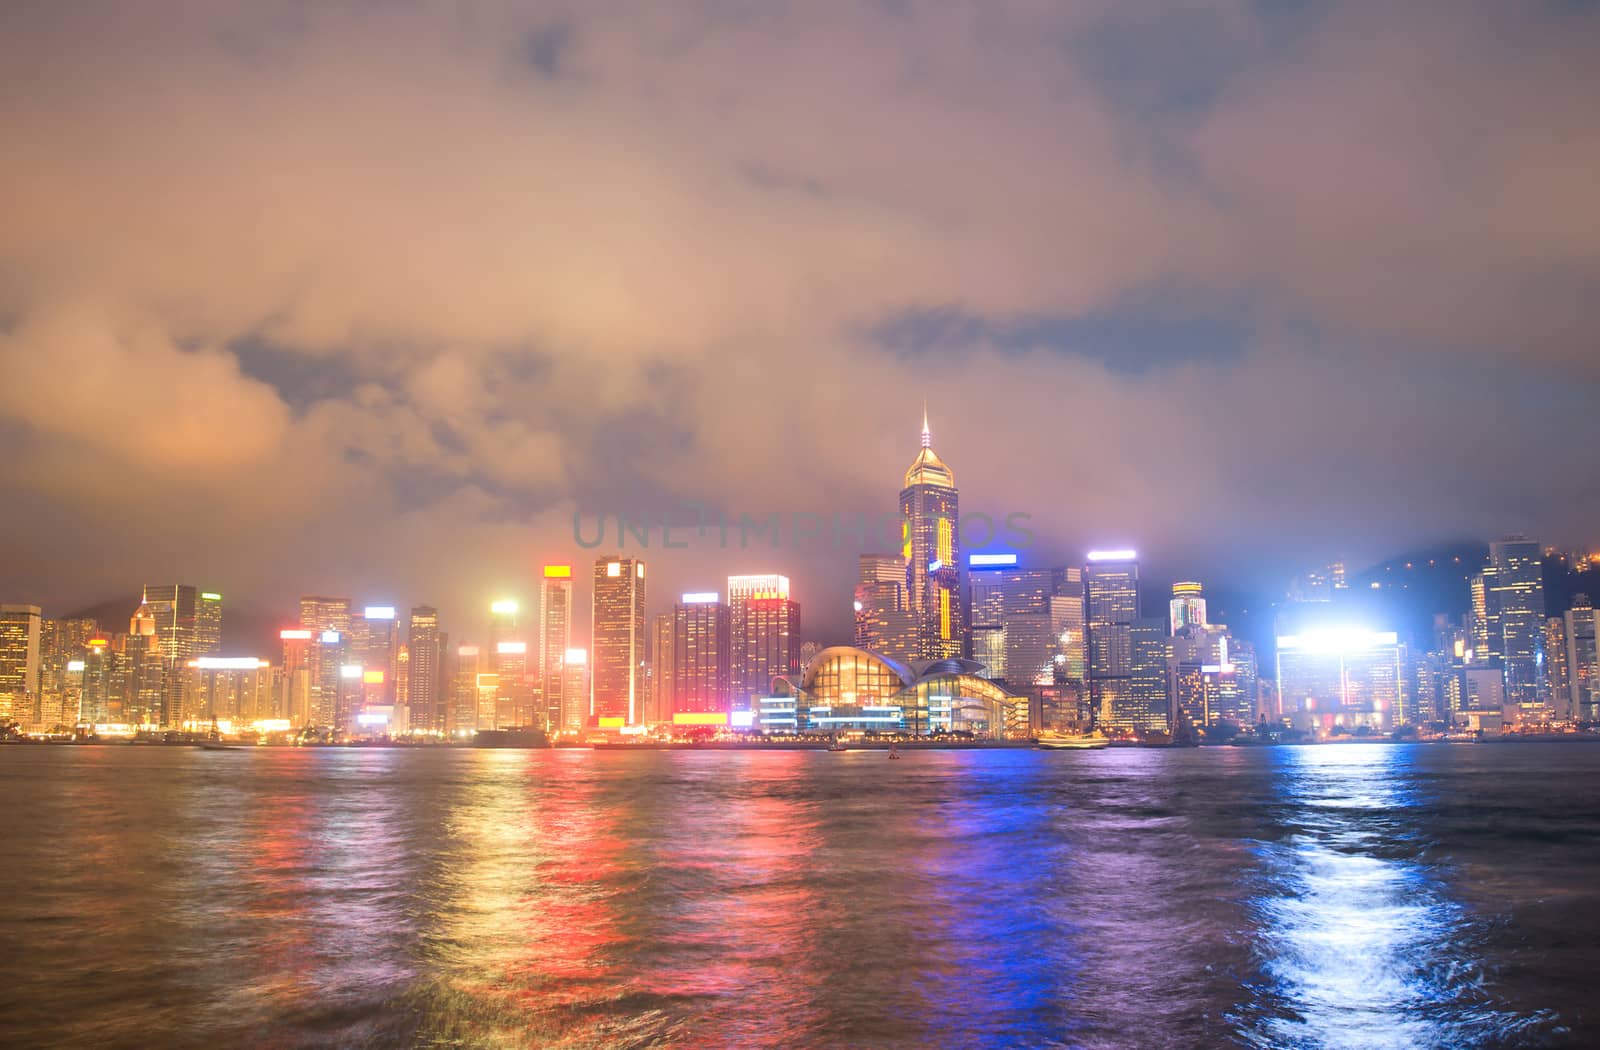 Hong Kong night view by joyfull